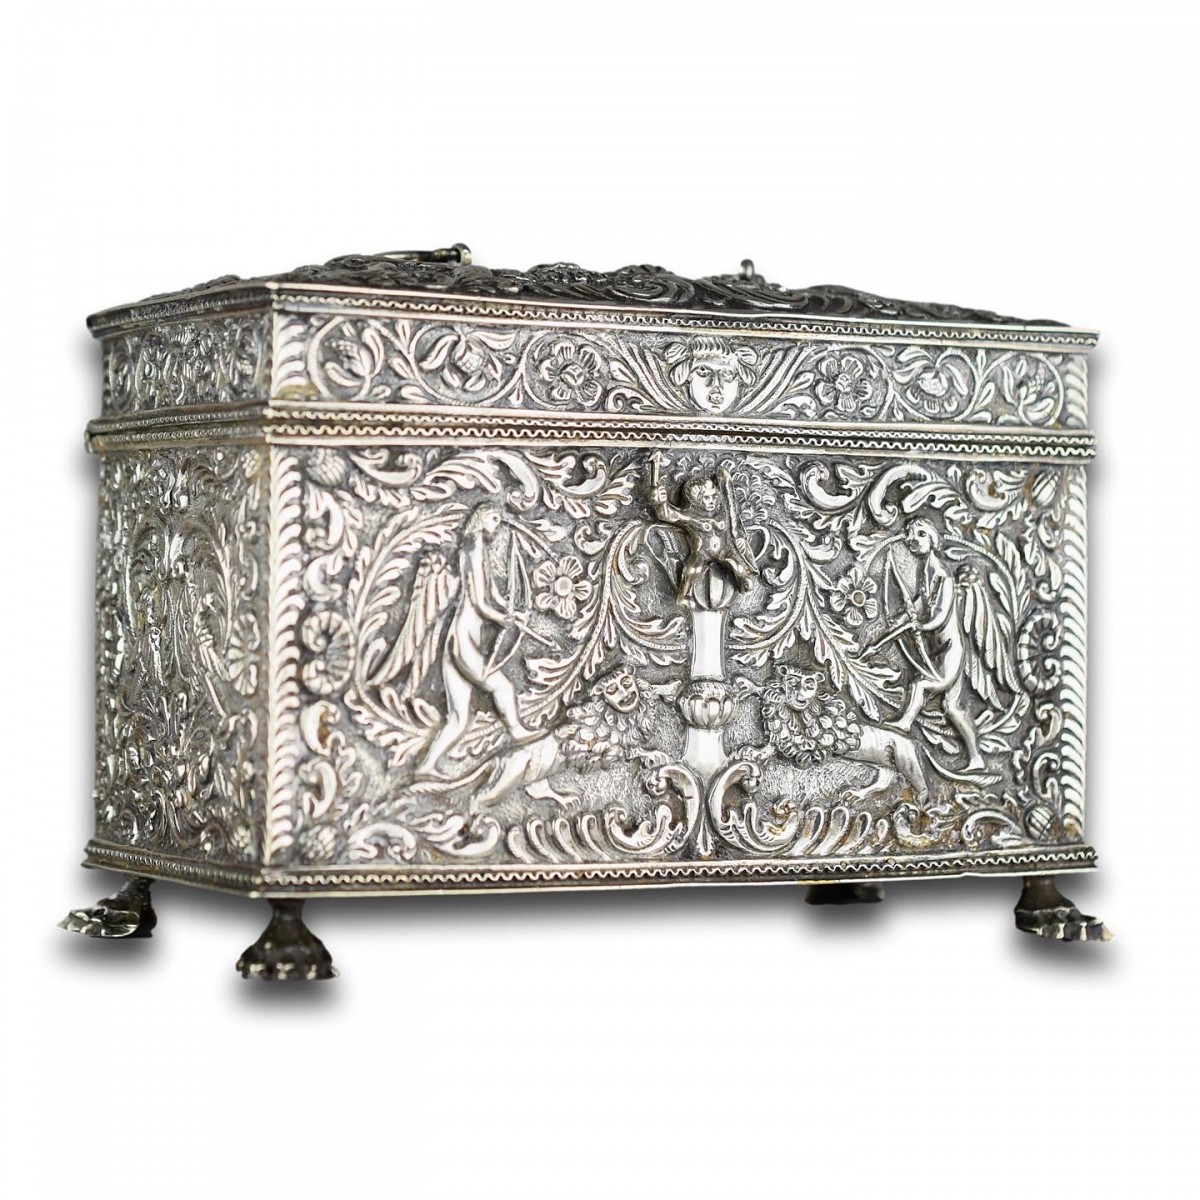 Repoussé silver marriage casket, Dutch19th century